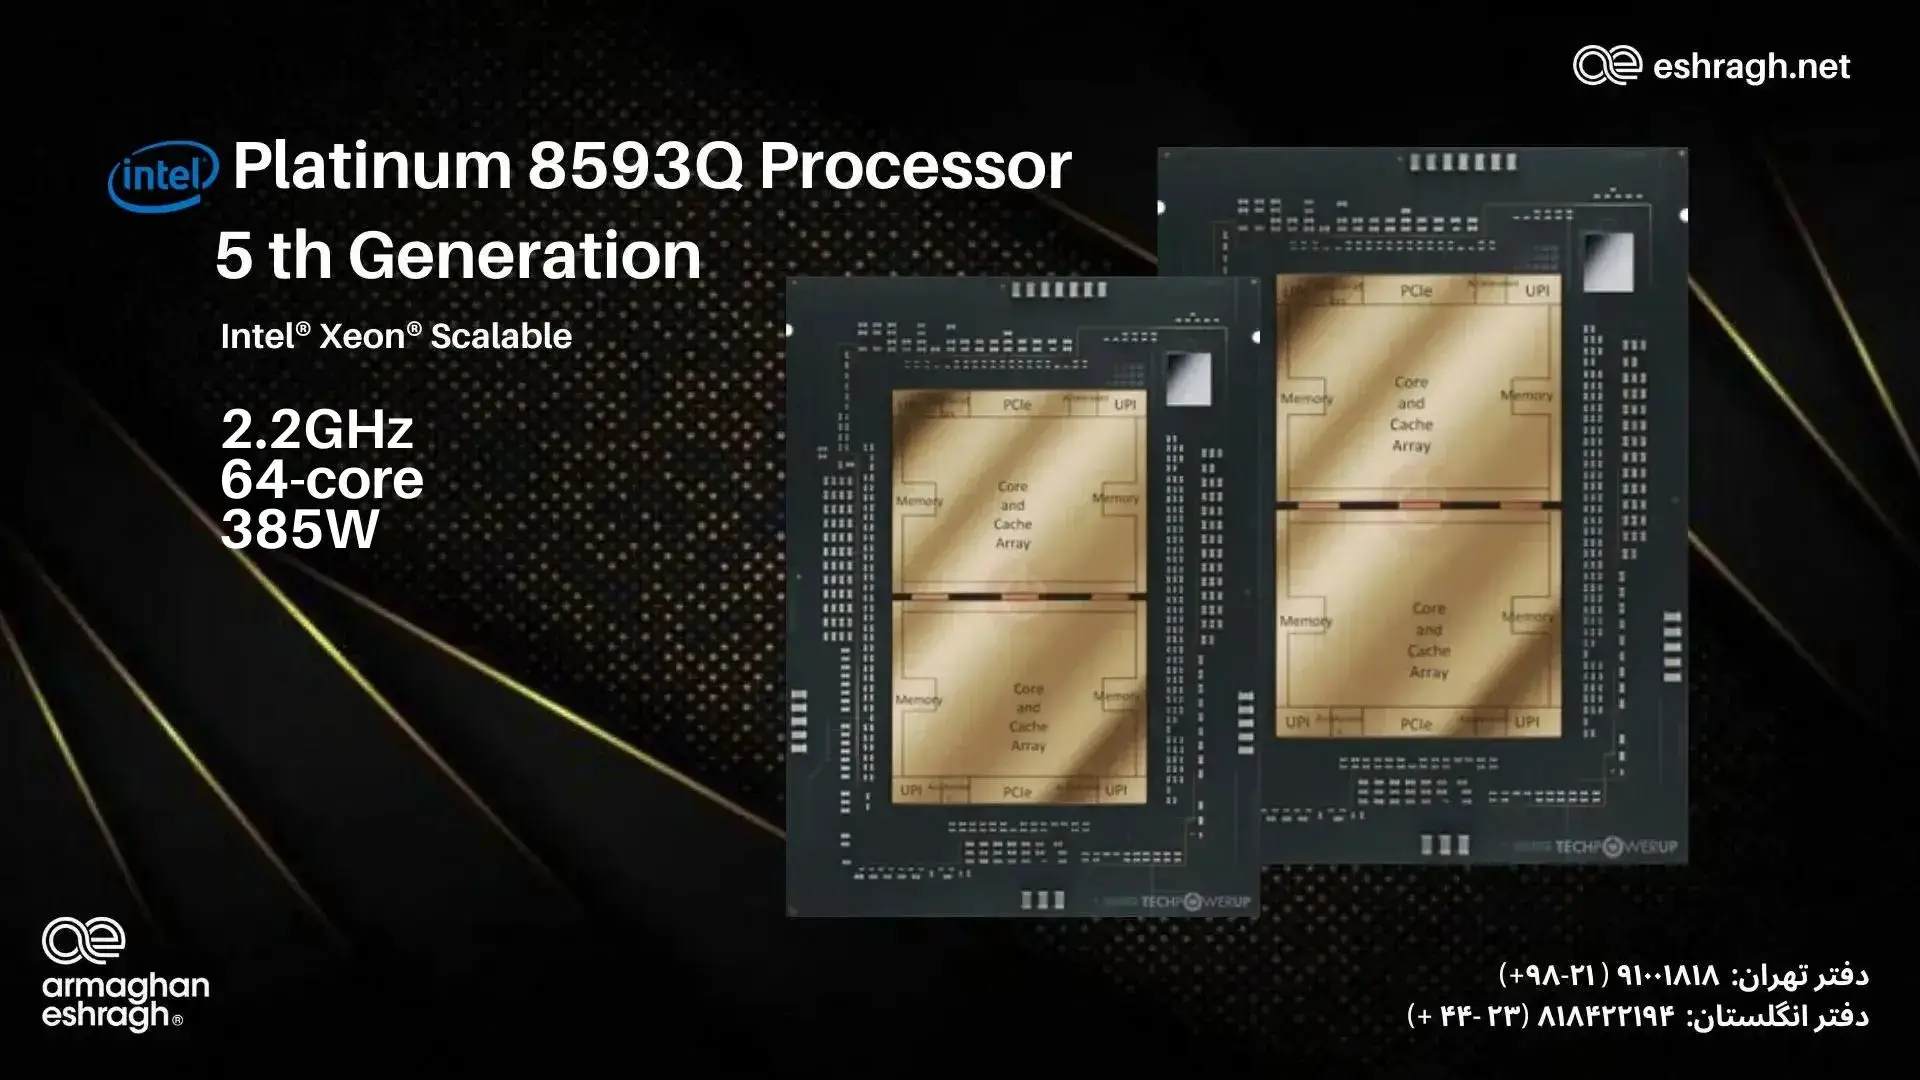 مشخصات فنی پردازنده Platinum 8593Q